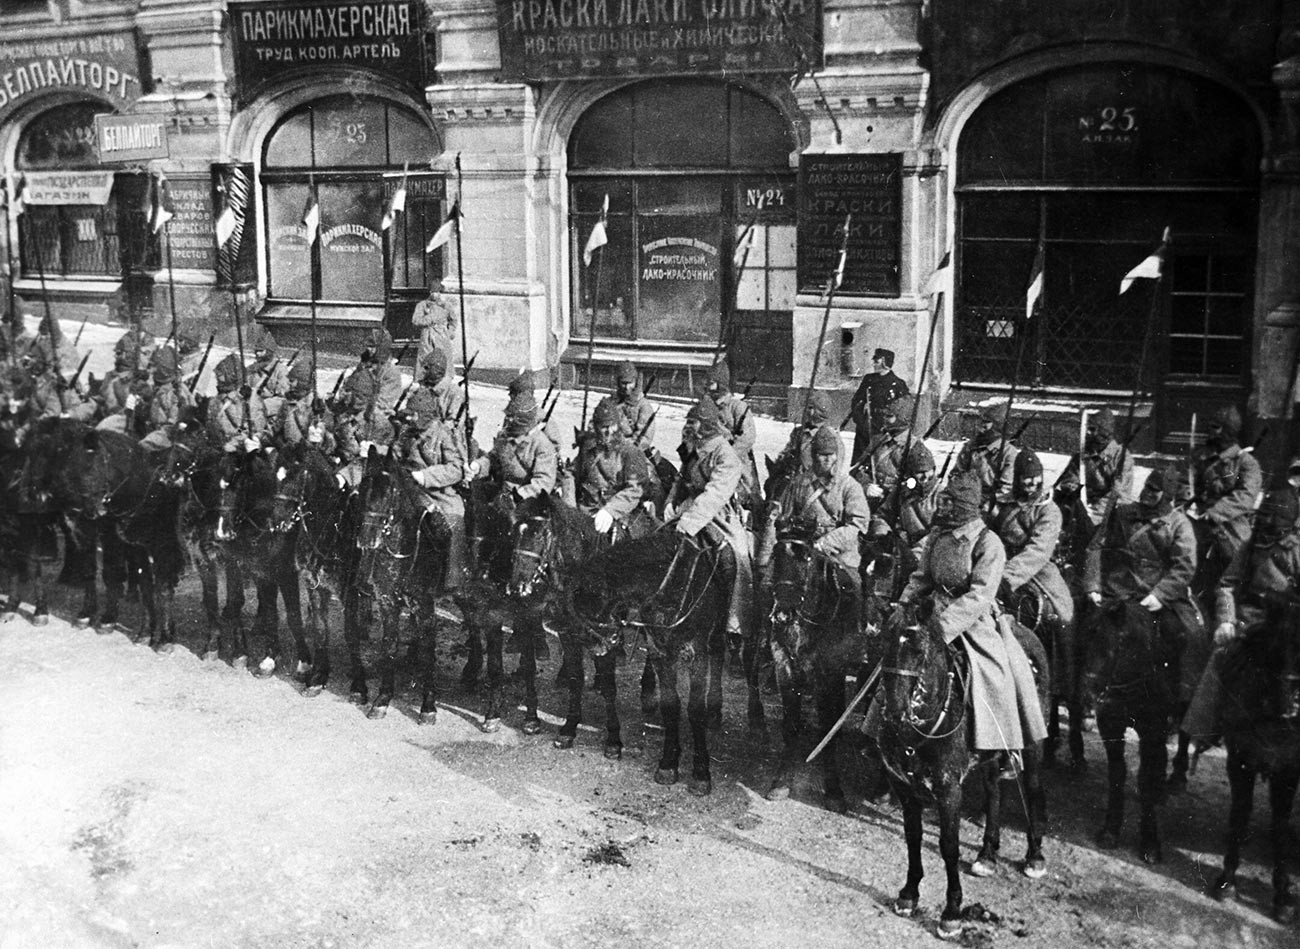 Prva konjička armija na paradi na Crvenom trgu

